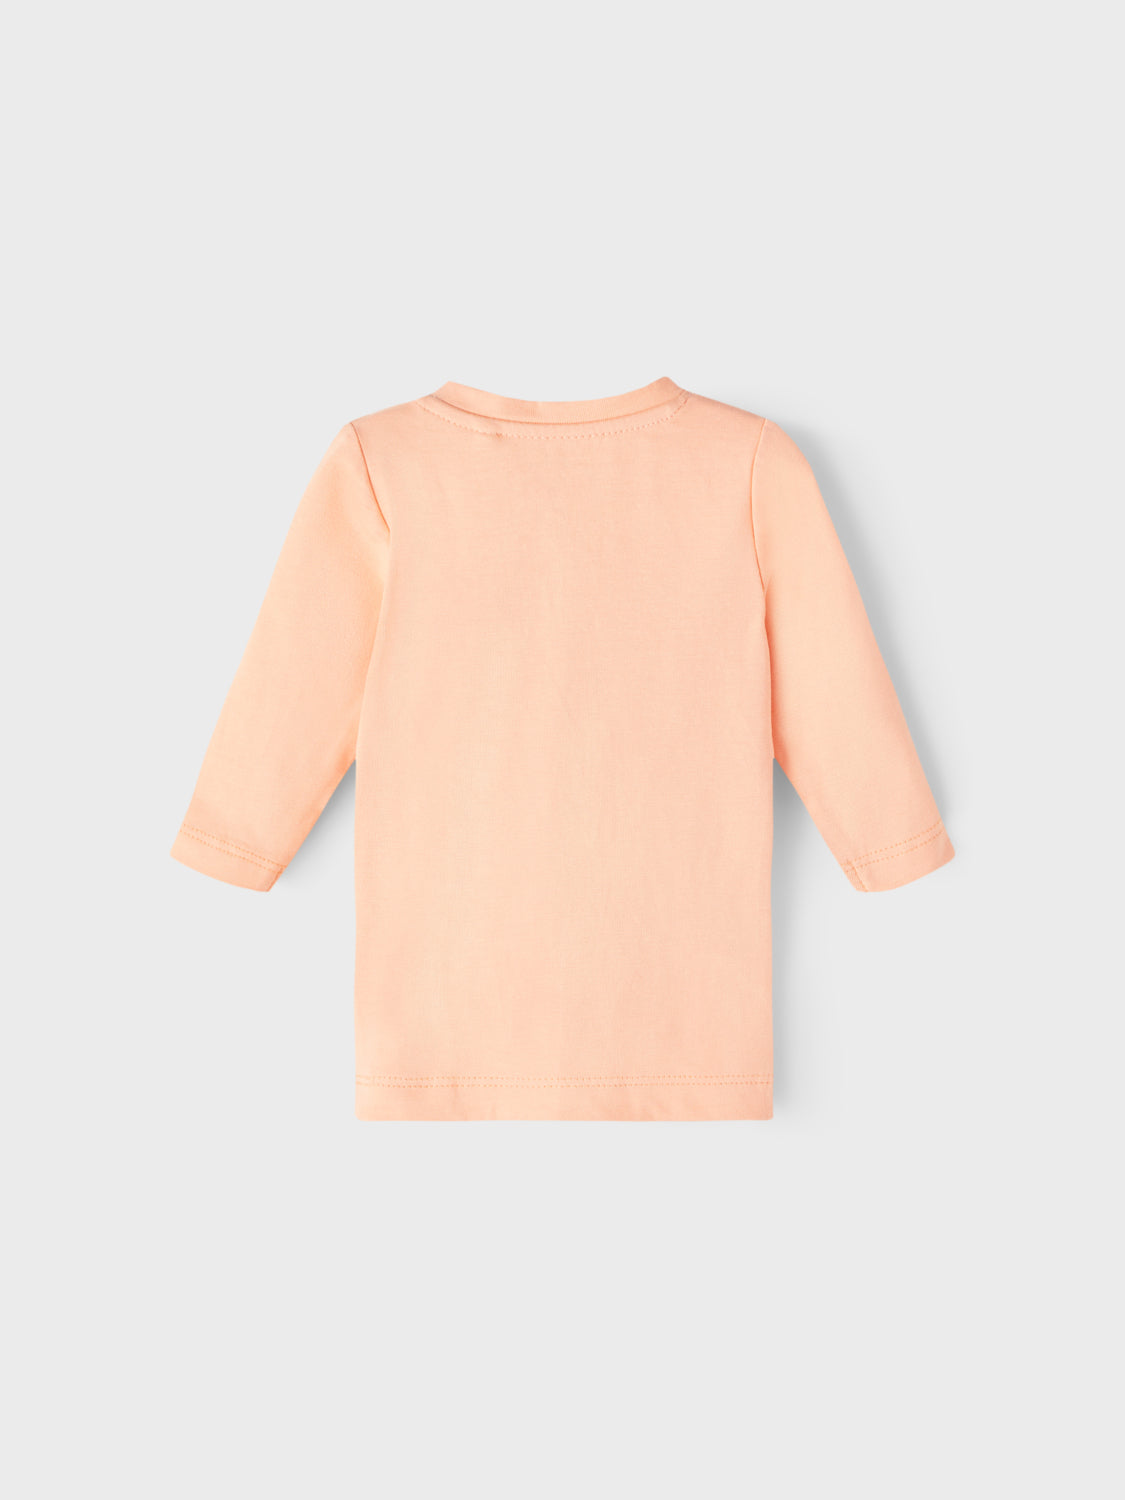 NBFFABORO T-Shirts & Tops - Peach Nectar